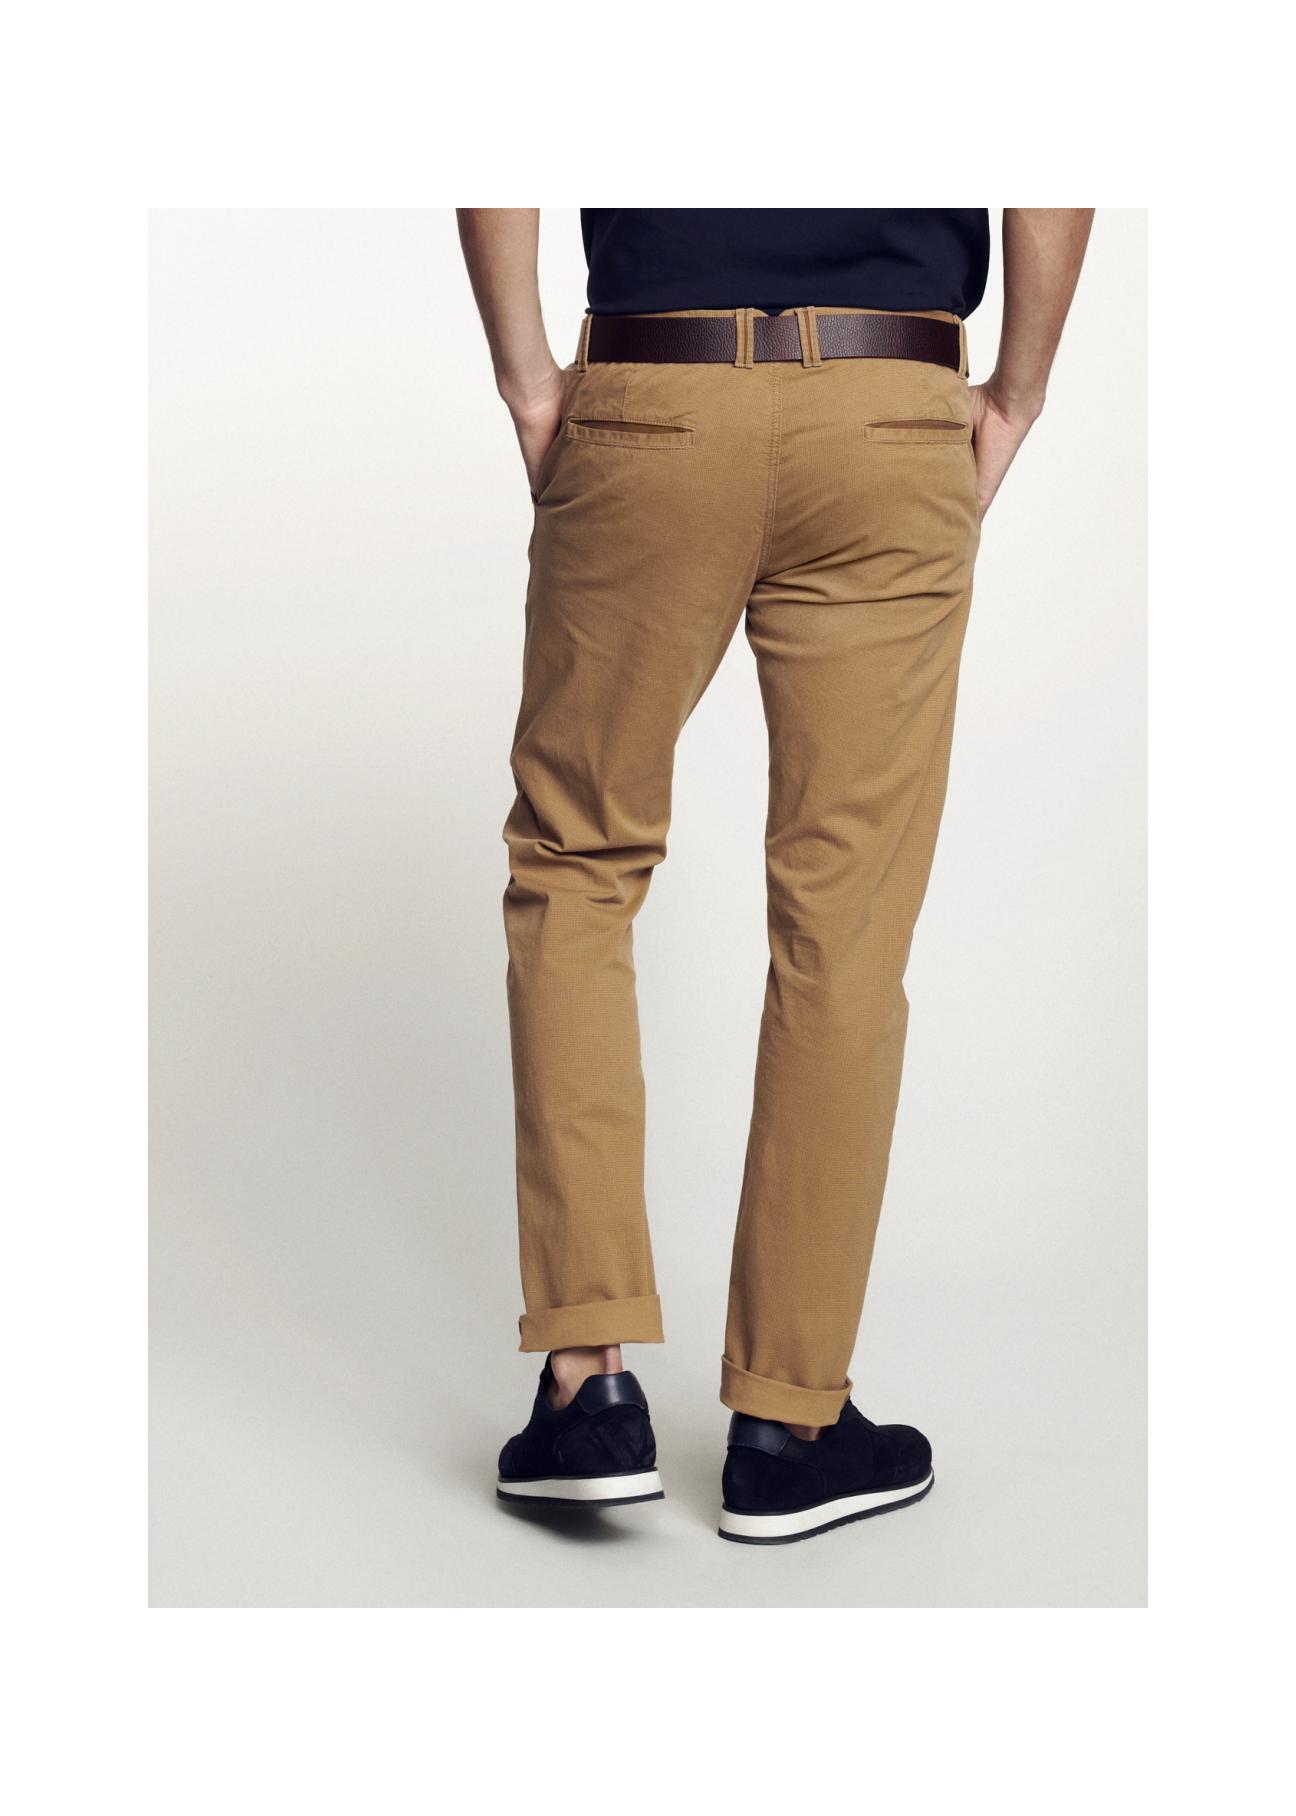 Spodnie męskie SPOMT-0063-24(W21)